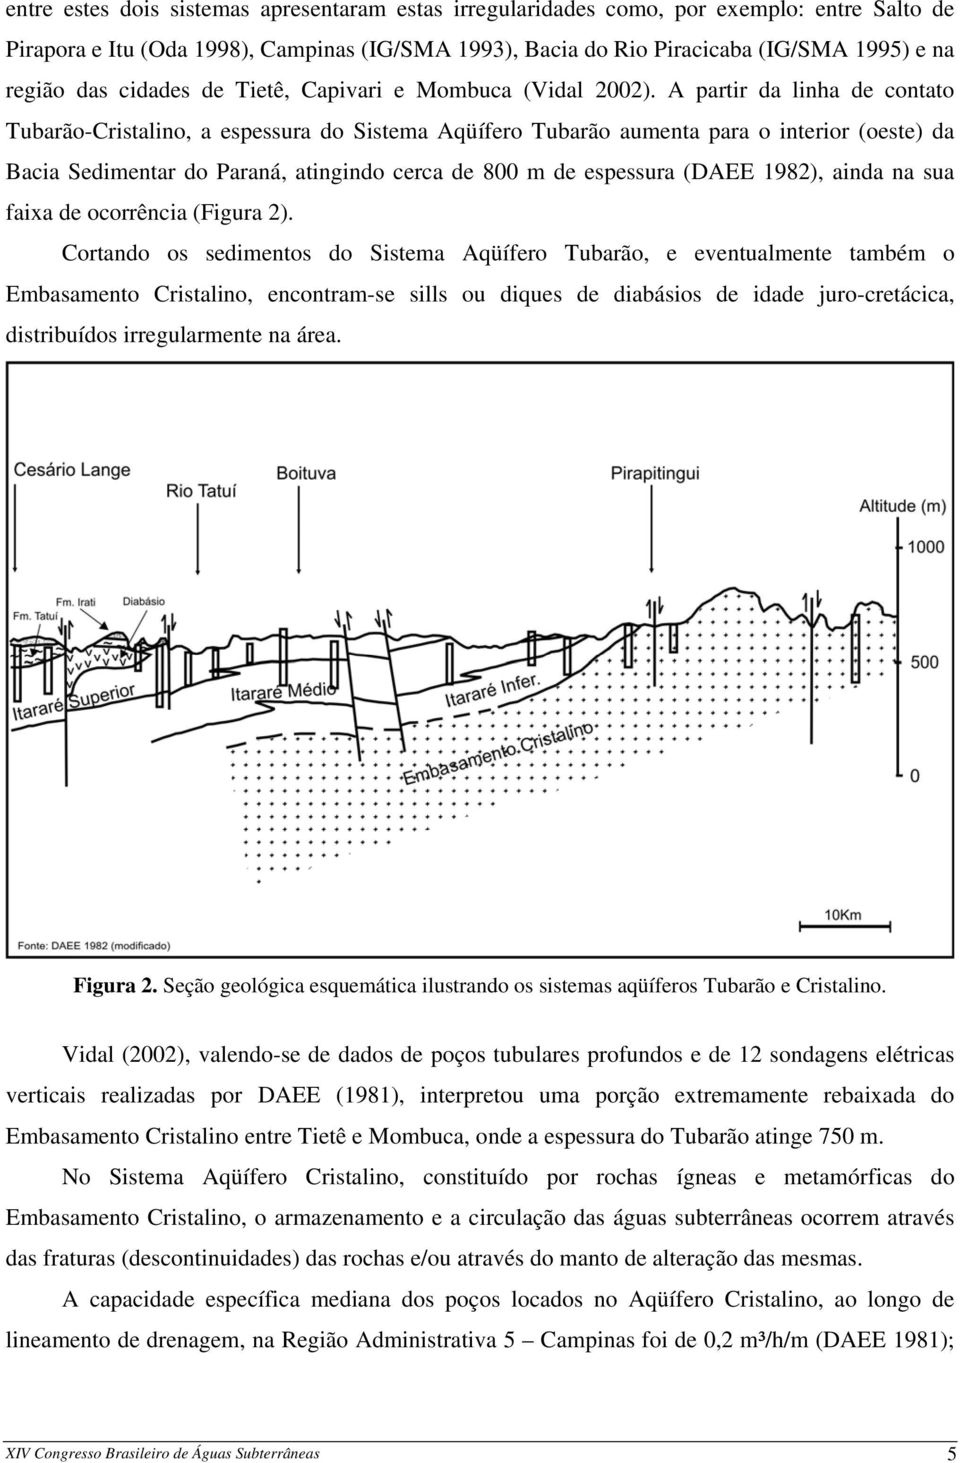 A partir da linha de contato Tubarão-Cristalino, a espessura do Sistema Aqüífero Tubarão aumenta para o interior (oeste) da Bacia Sedimentar do Paraná, atingindo cerca de 800 m de espessura (DAEE